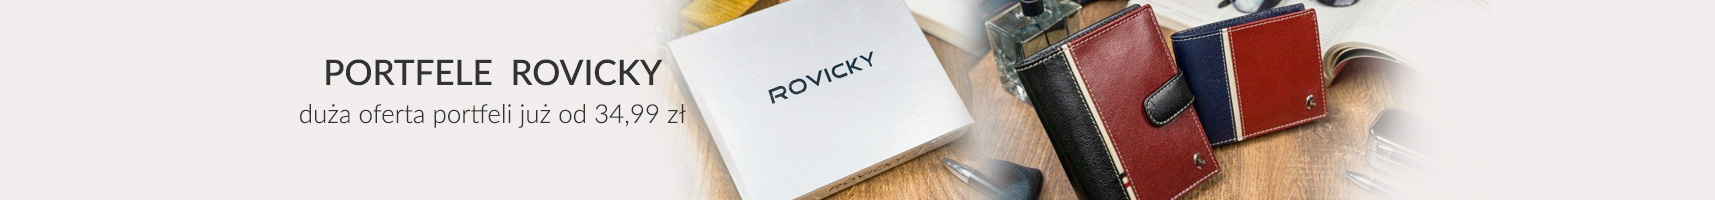 Portfele ROVICKY - duża oferta damskich i męskich portfeli